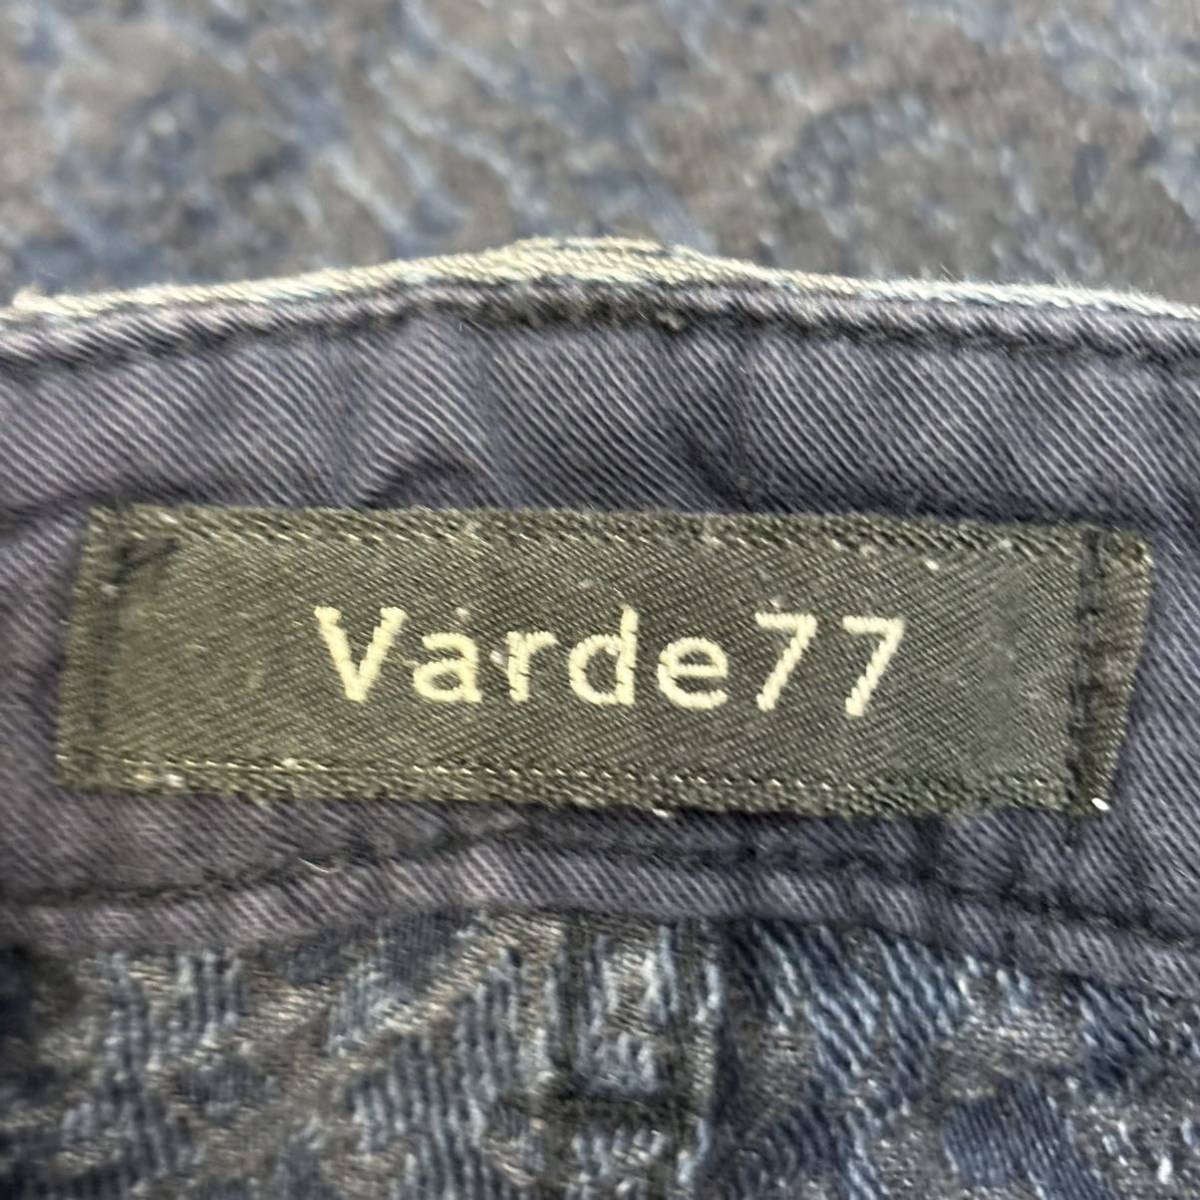 Varde77 REPEATING INDIGO TAPERED PANTS VR16AW-ST-PT01 size 1 16SS バルデ77 バルデセブンティセブン インディゴ テーパードパンツ_画像3